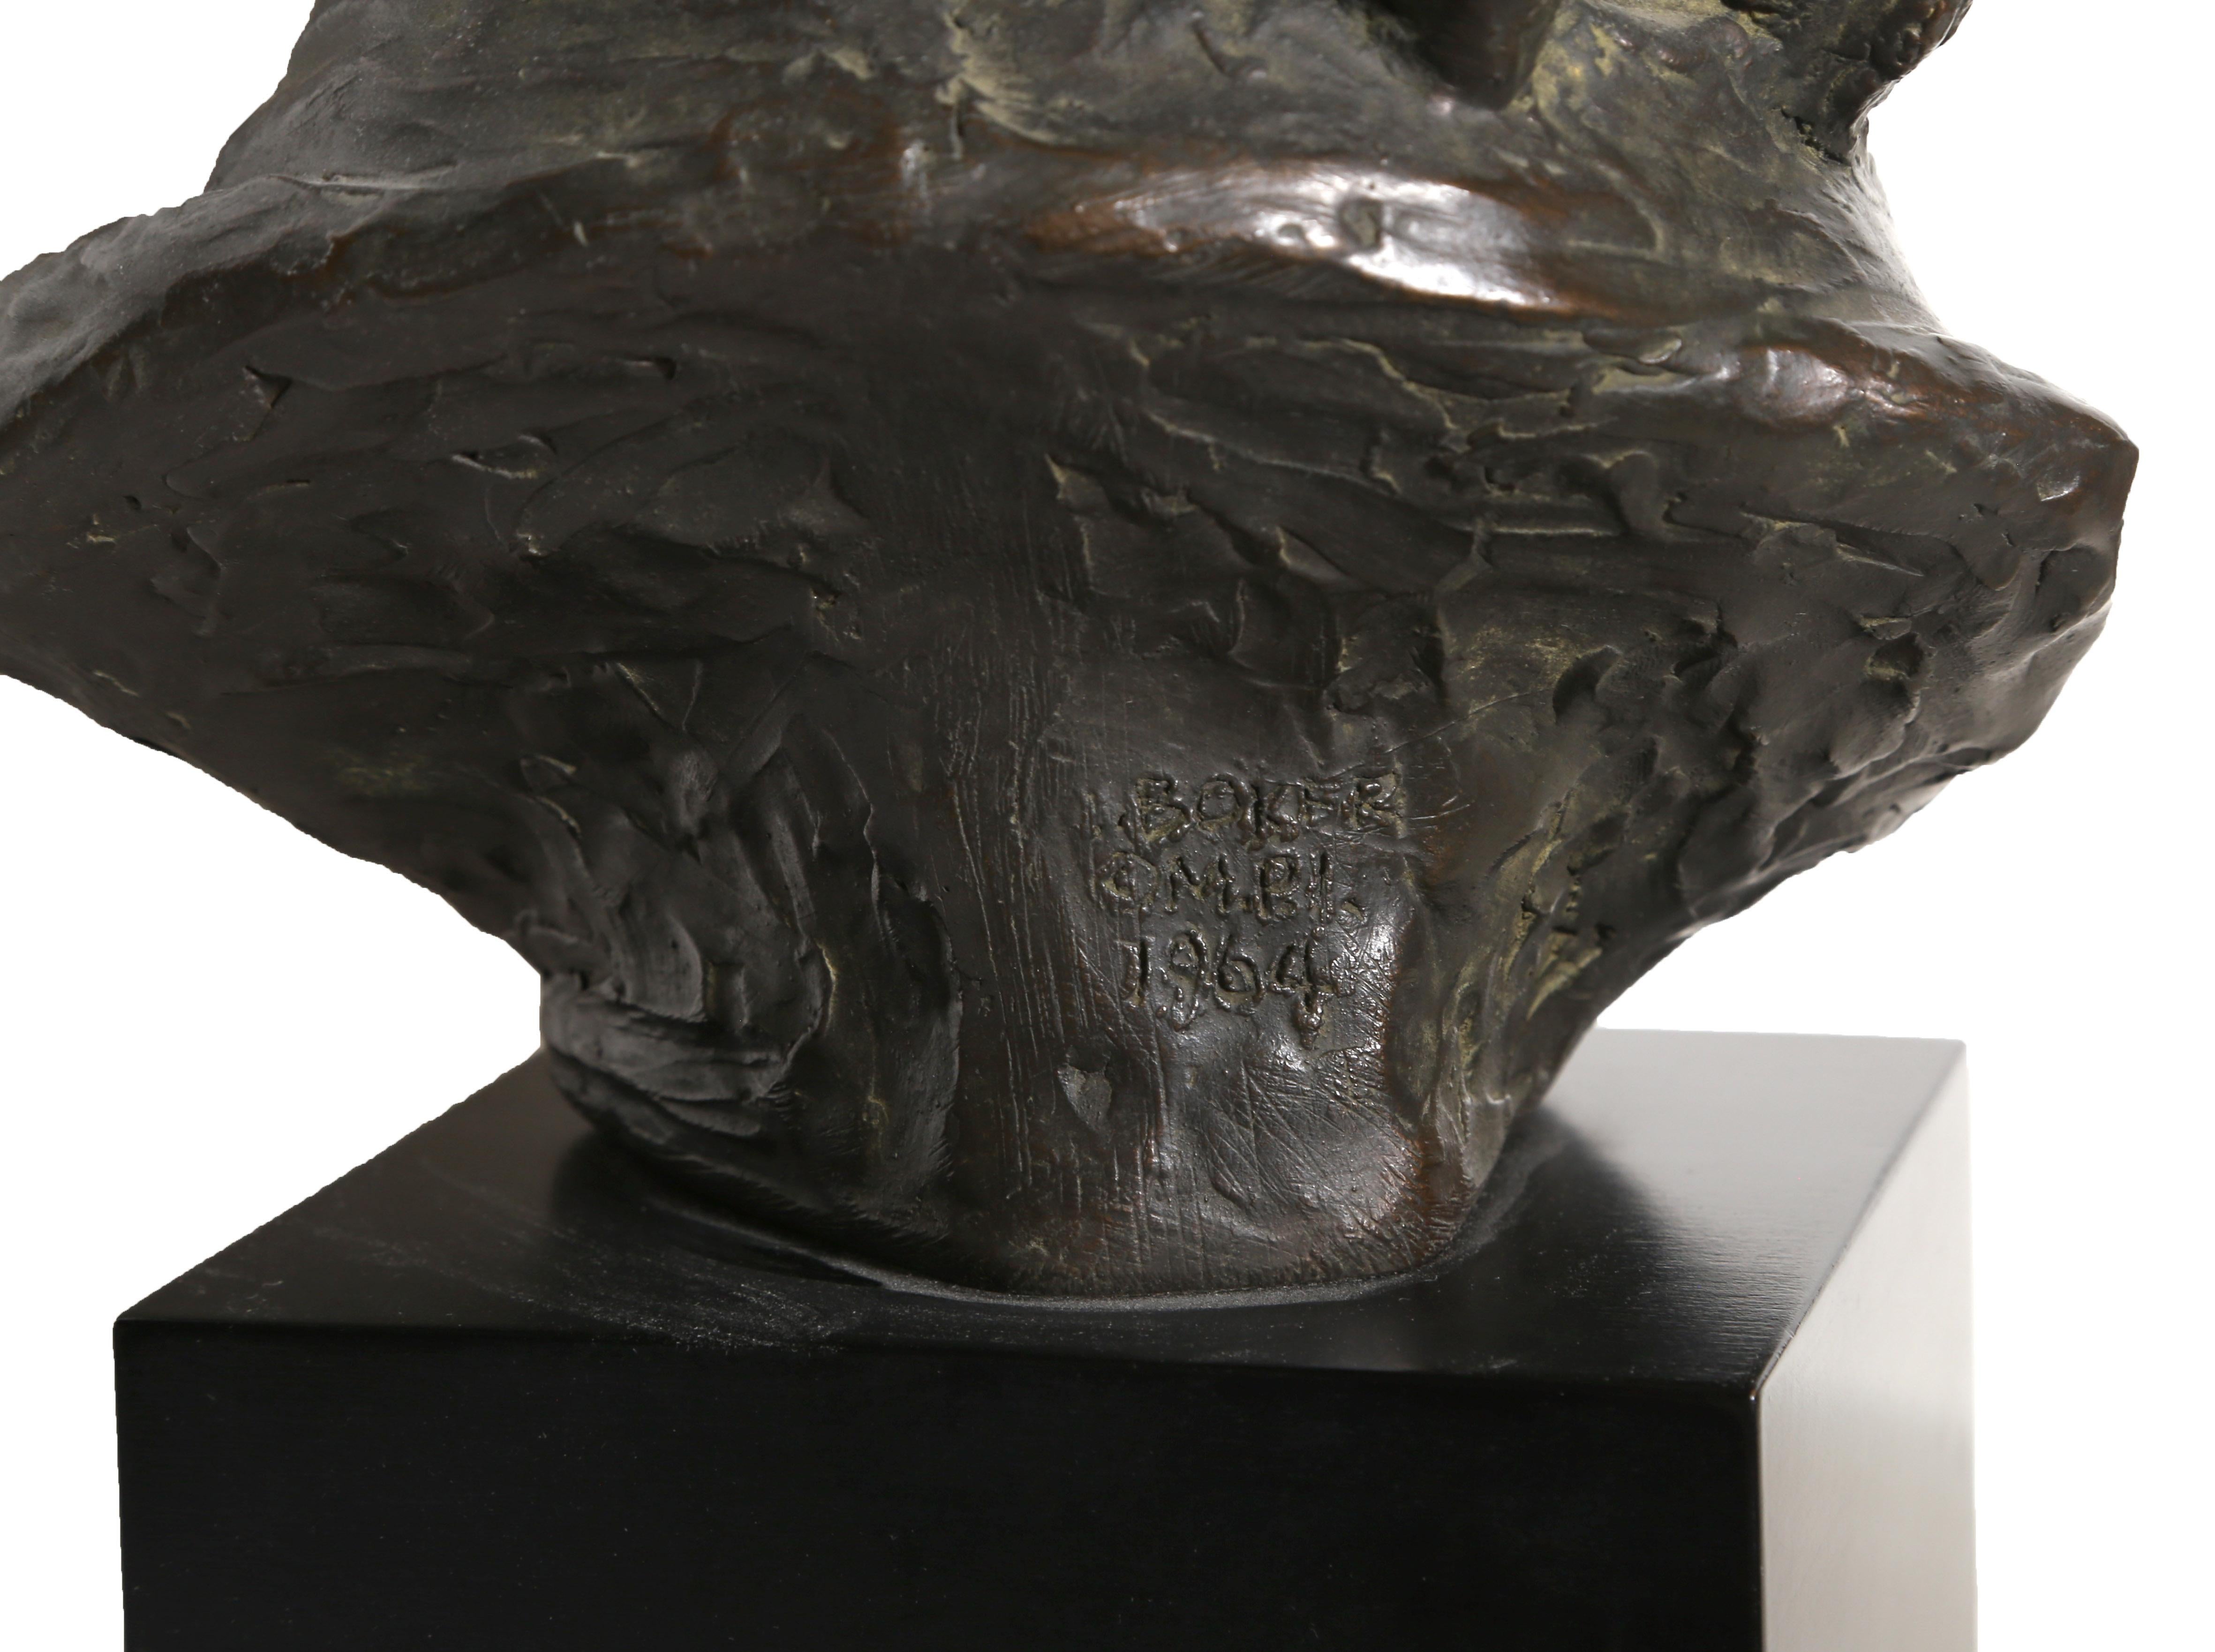 epstein sculpture of einstein